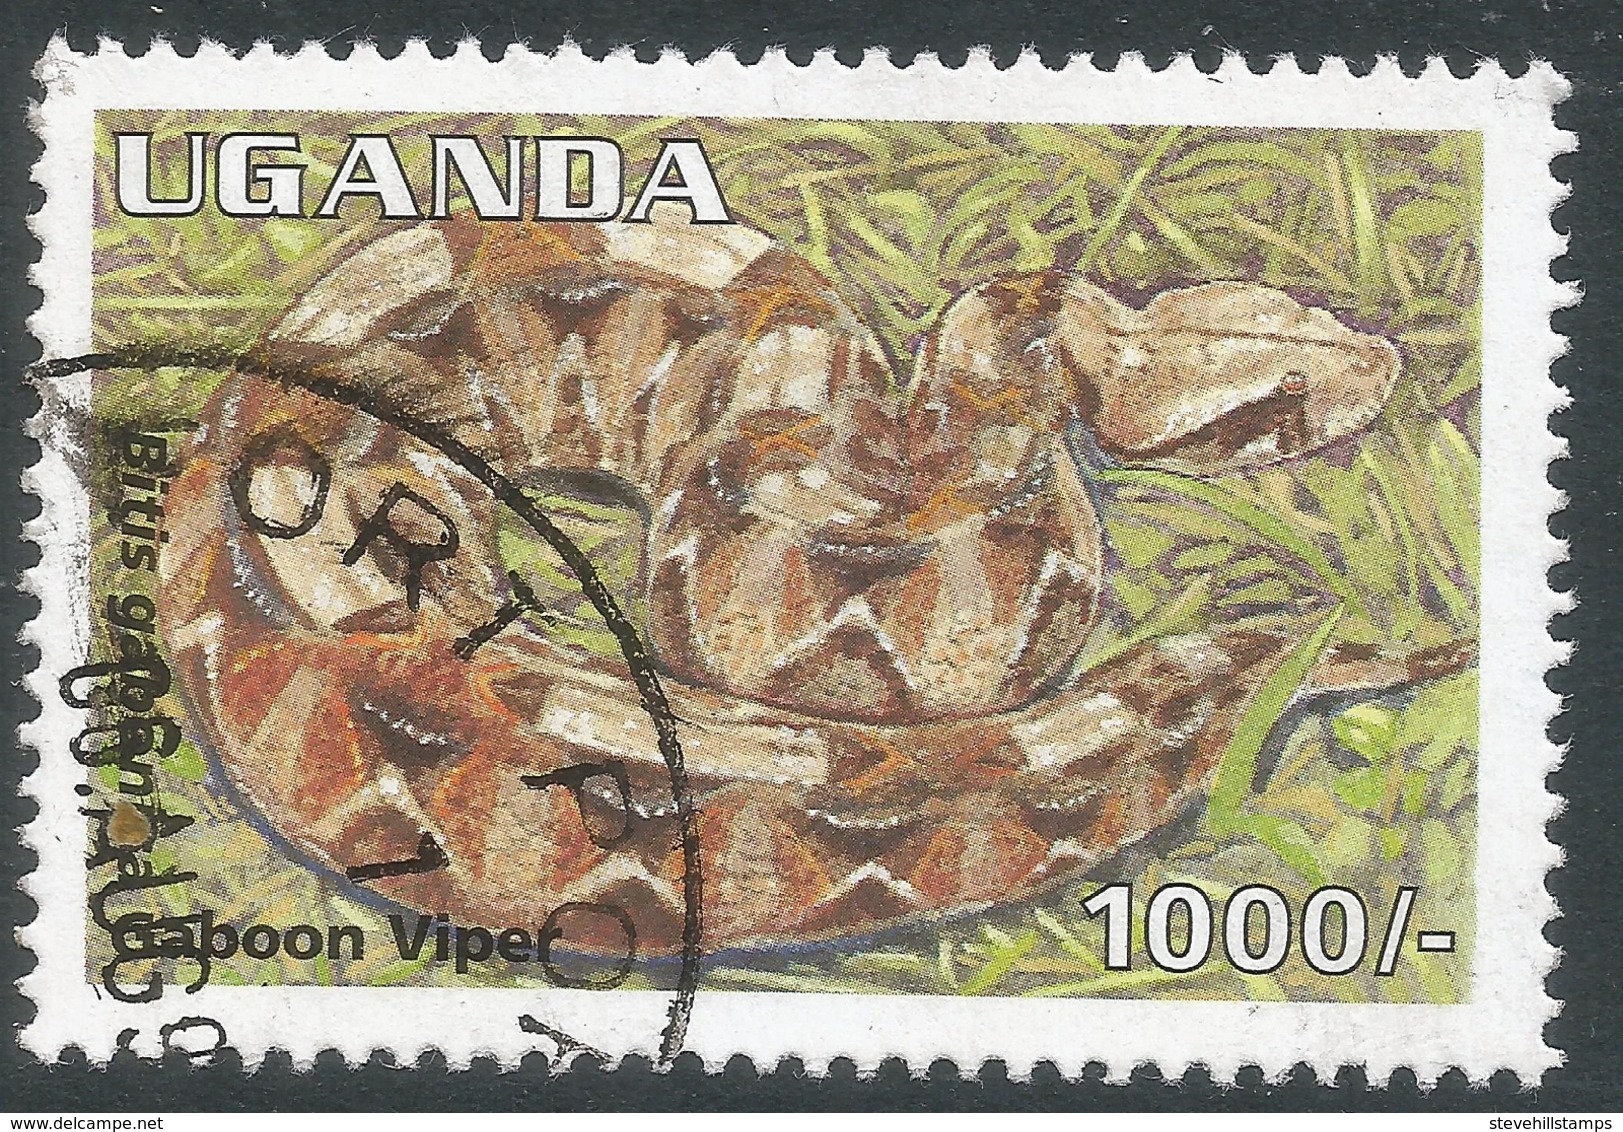 Uganda. 1995 Reptiles. 1000/- Used. SG 1523 - Uganda (1962-...)